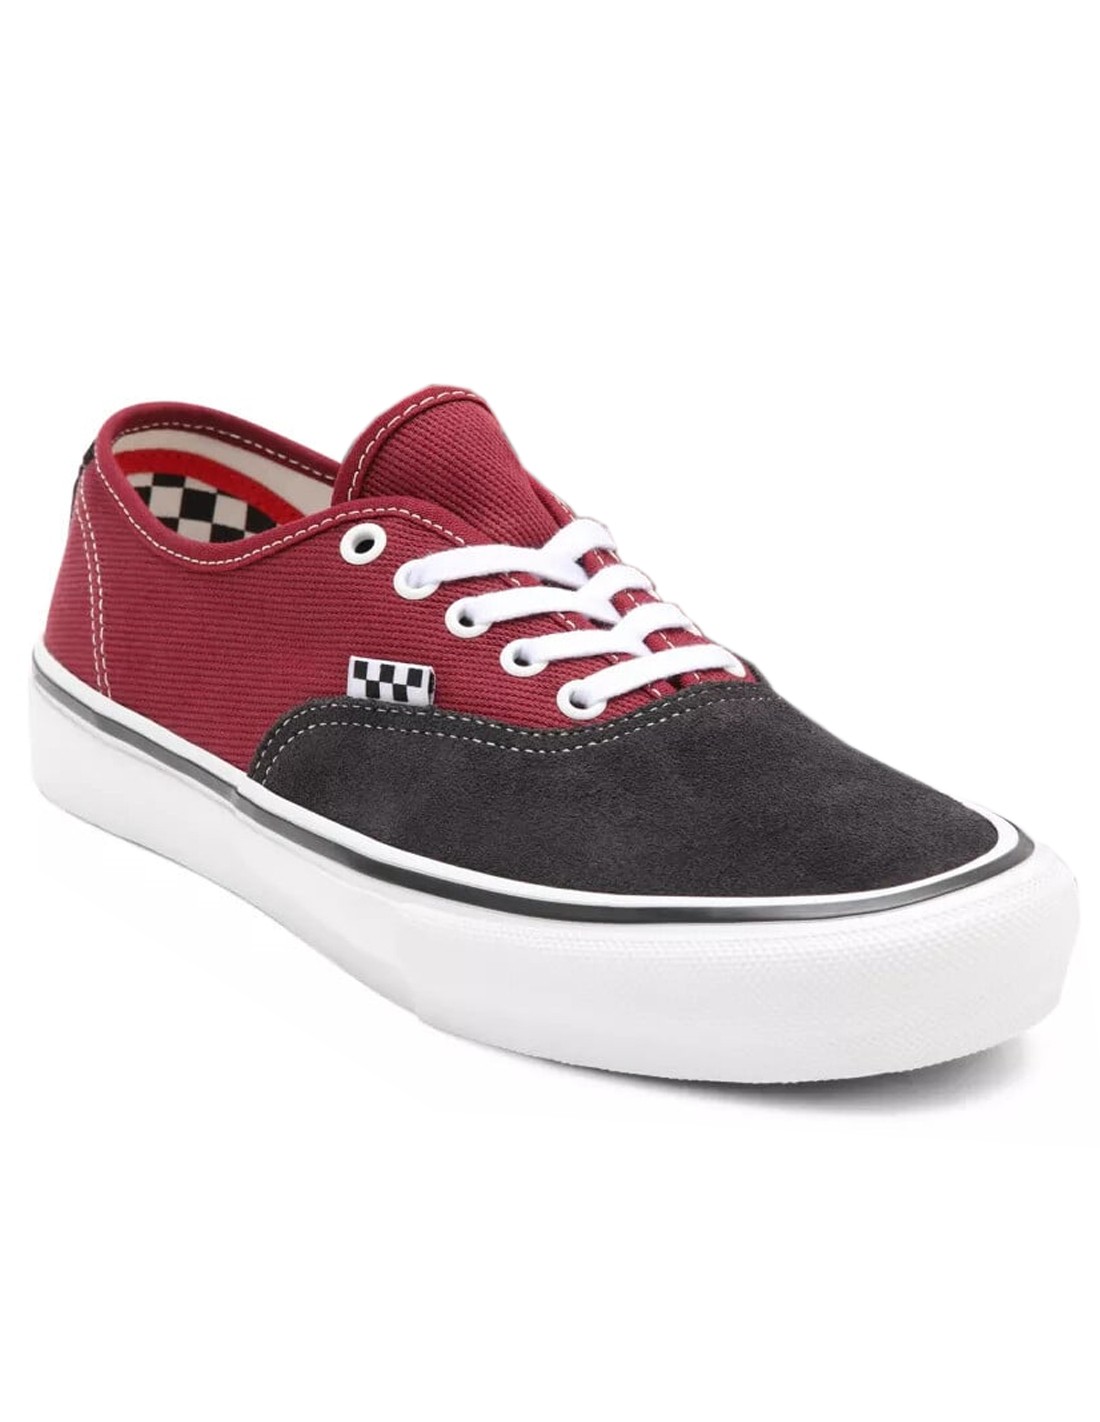 Vans Skate - Pomegranate - Chaussures de Skate